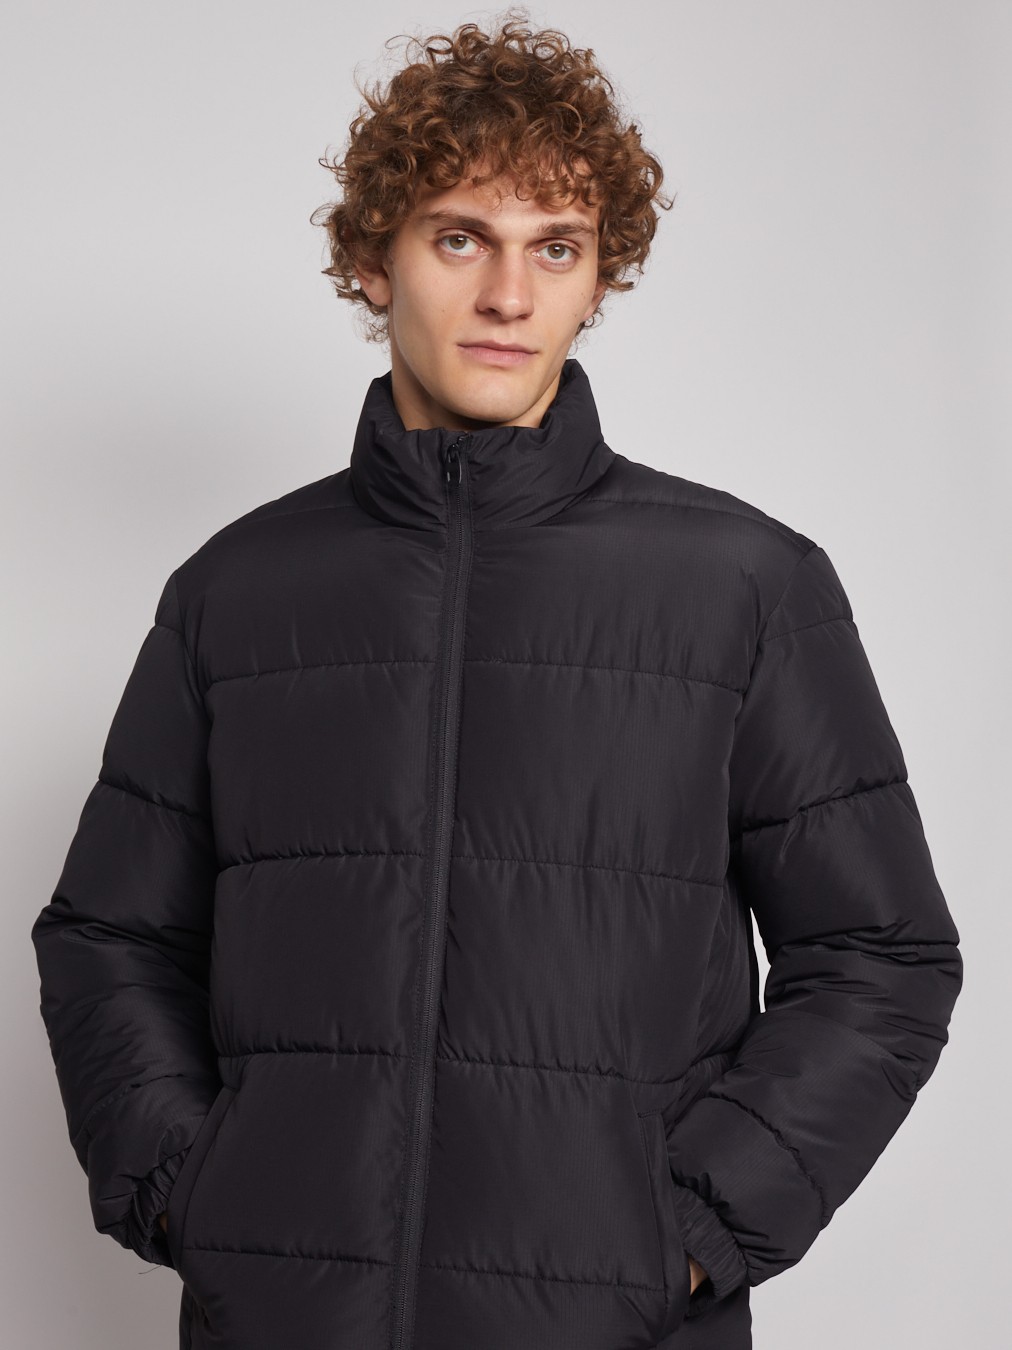 Тёплая куртка с воротником-стойкой zolla 012345102184, цвет черный, размер S - фото 5